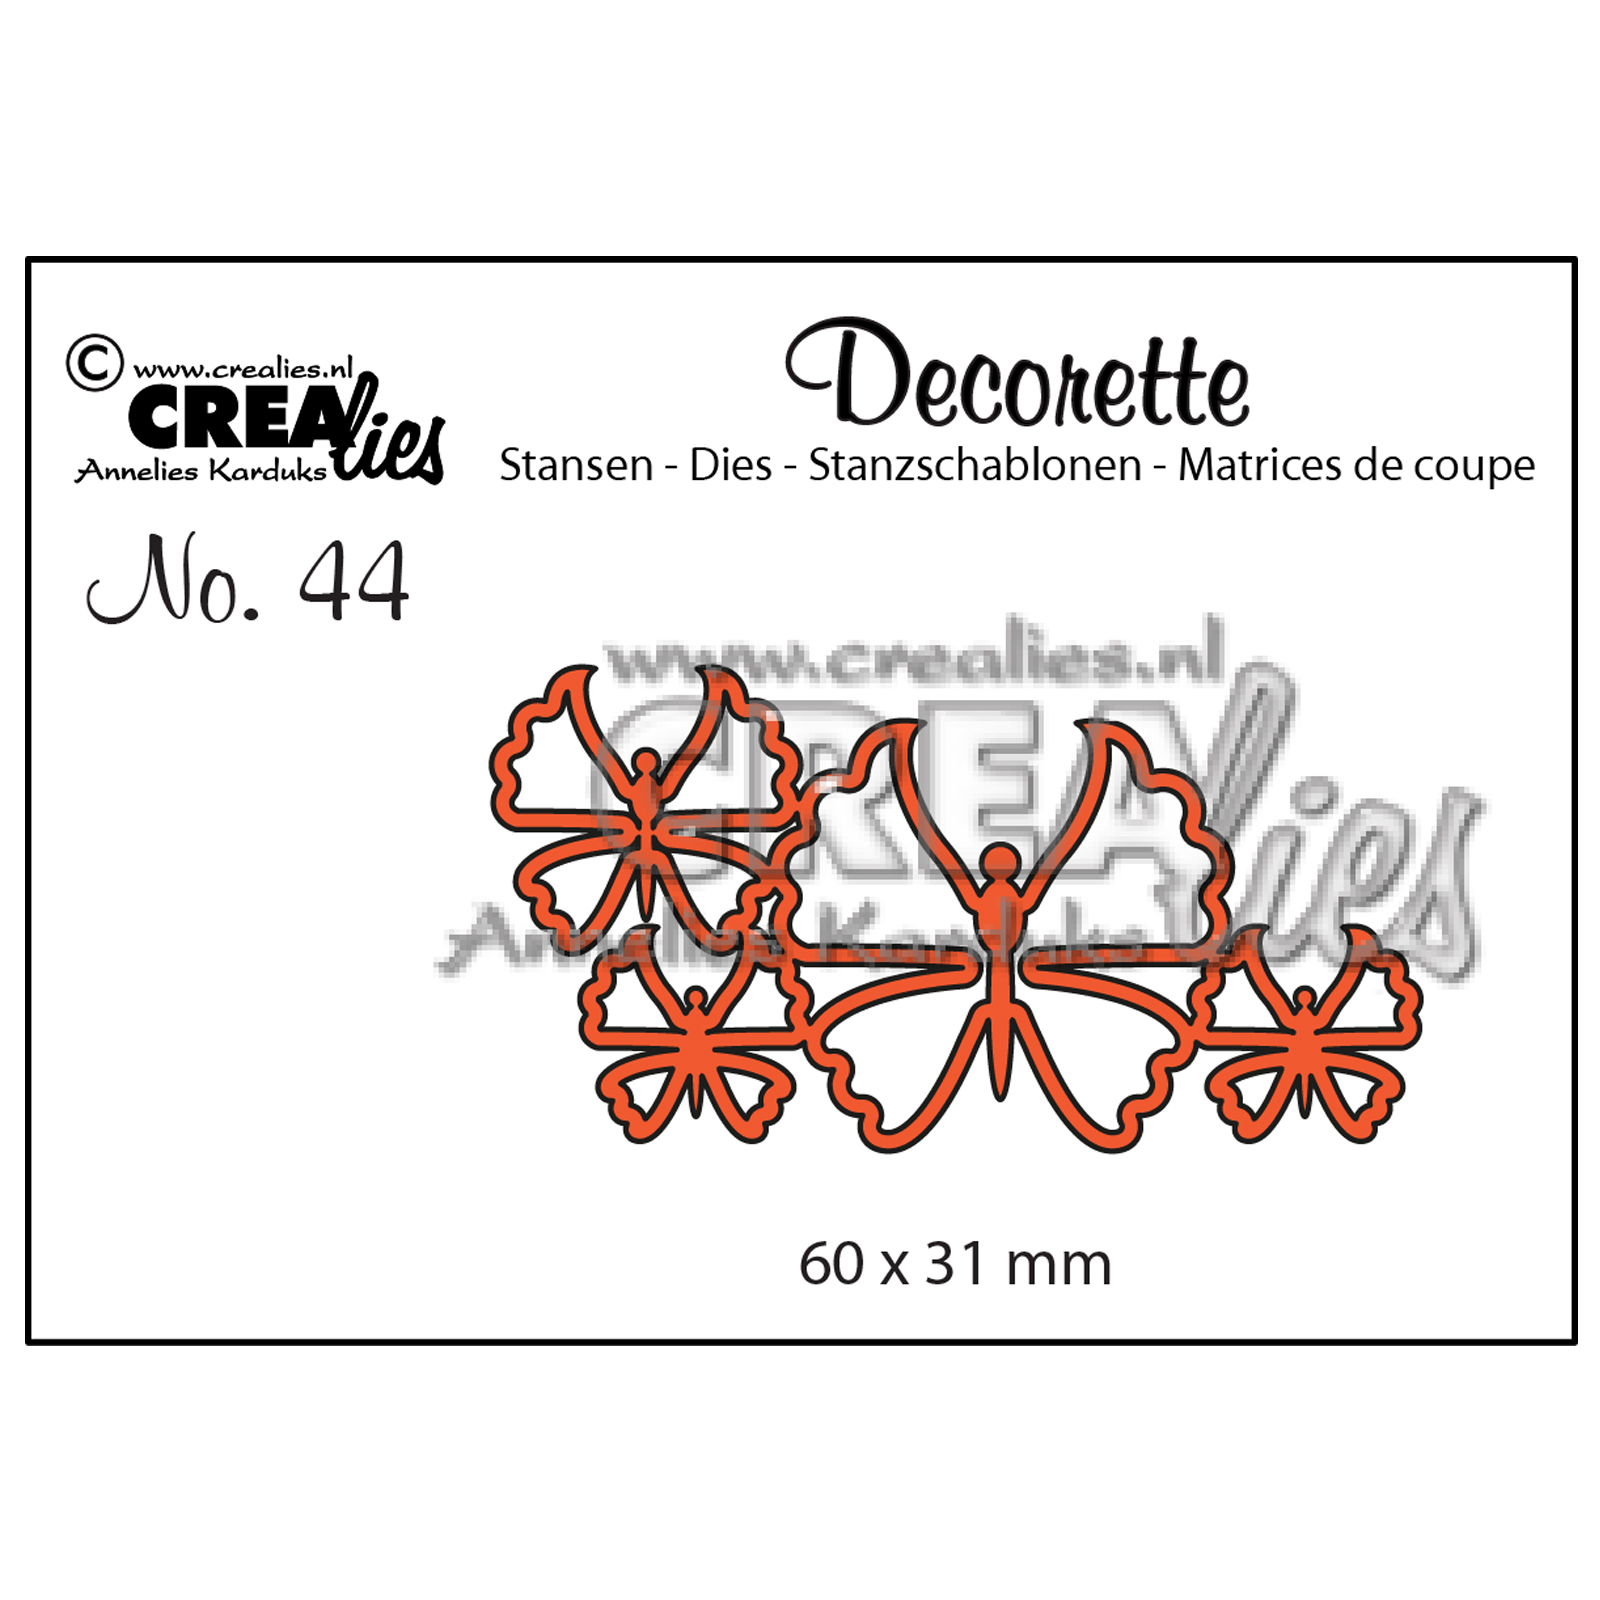 Crealies • Decorette Stanzschablone no.44 Schmetterlinge 6